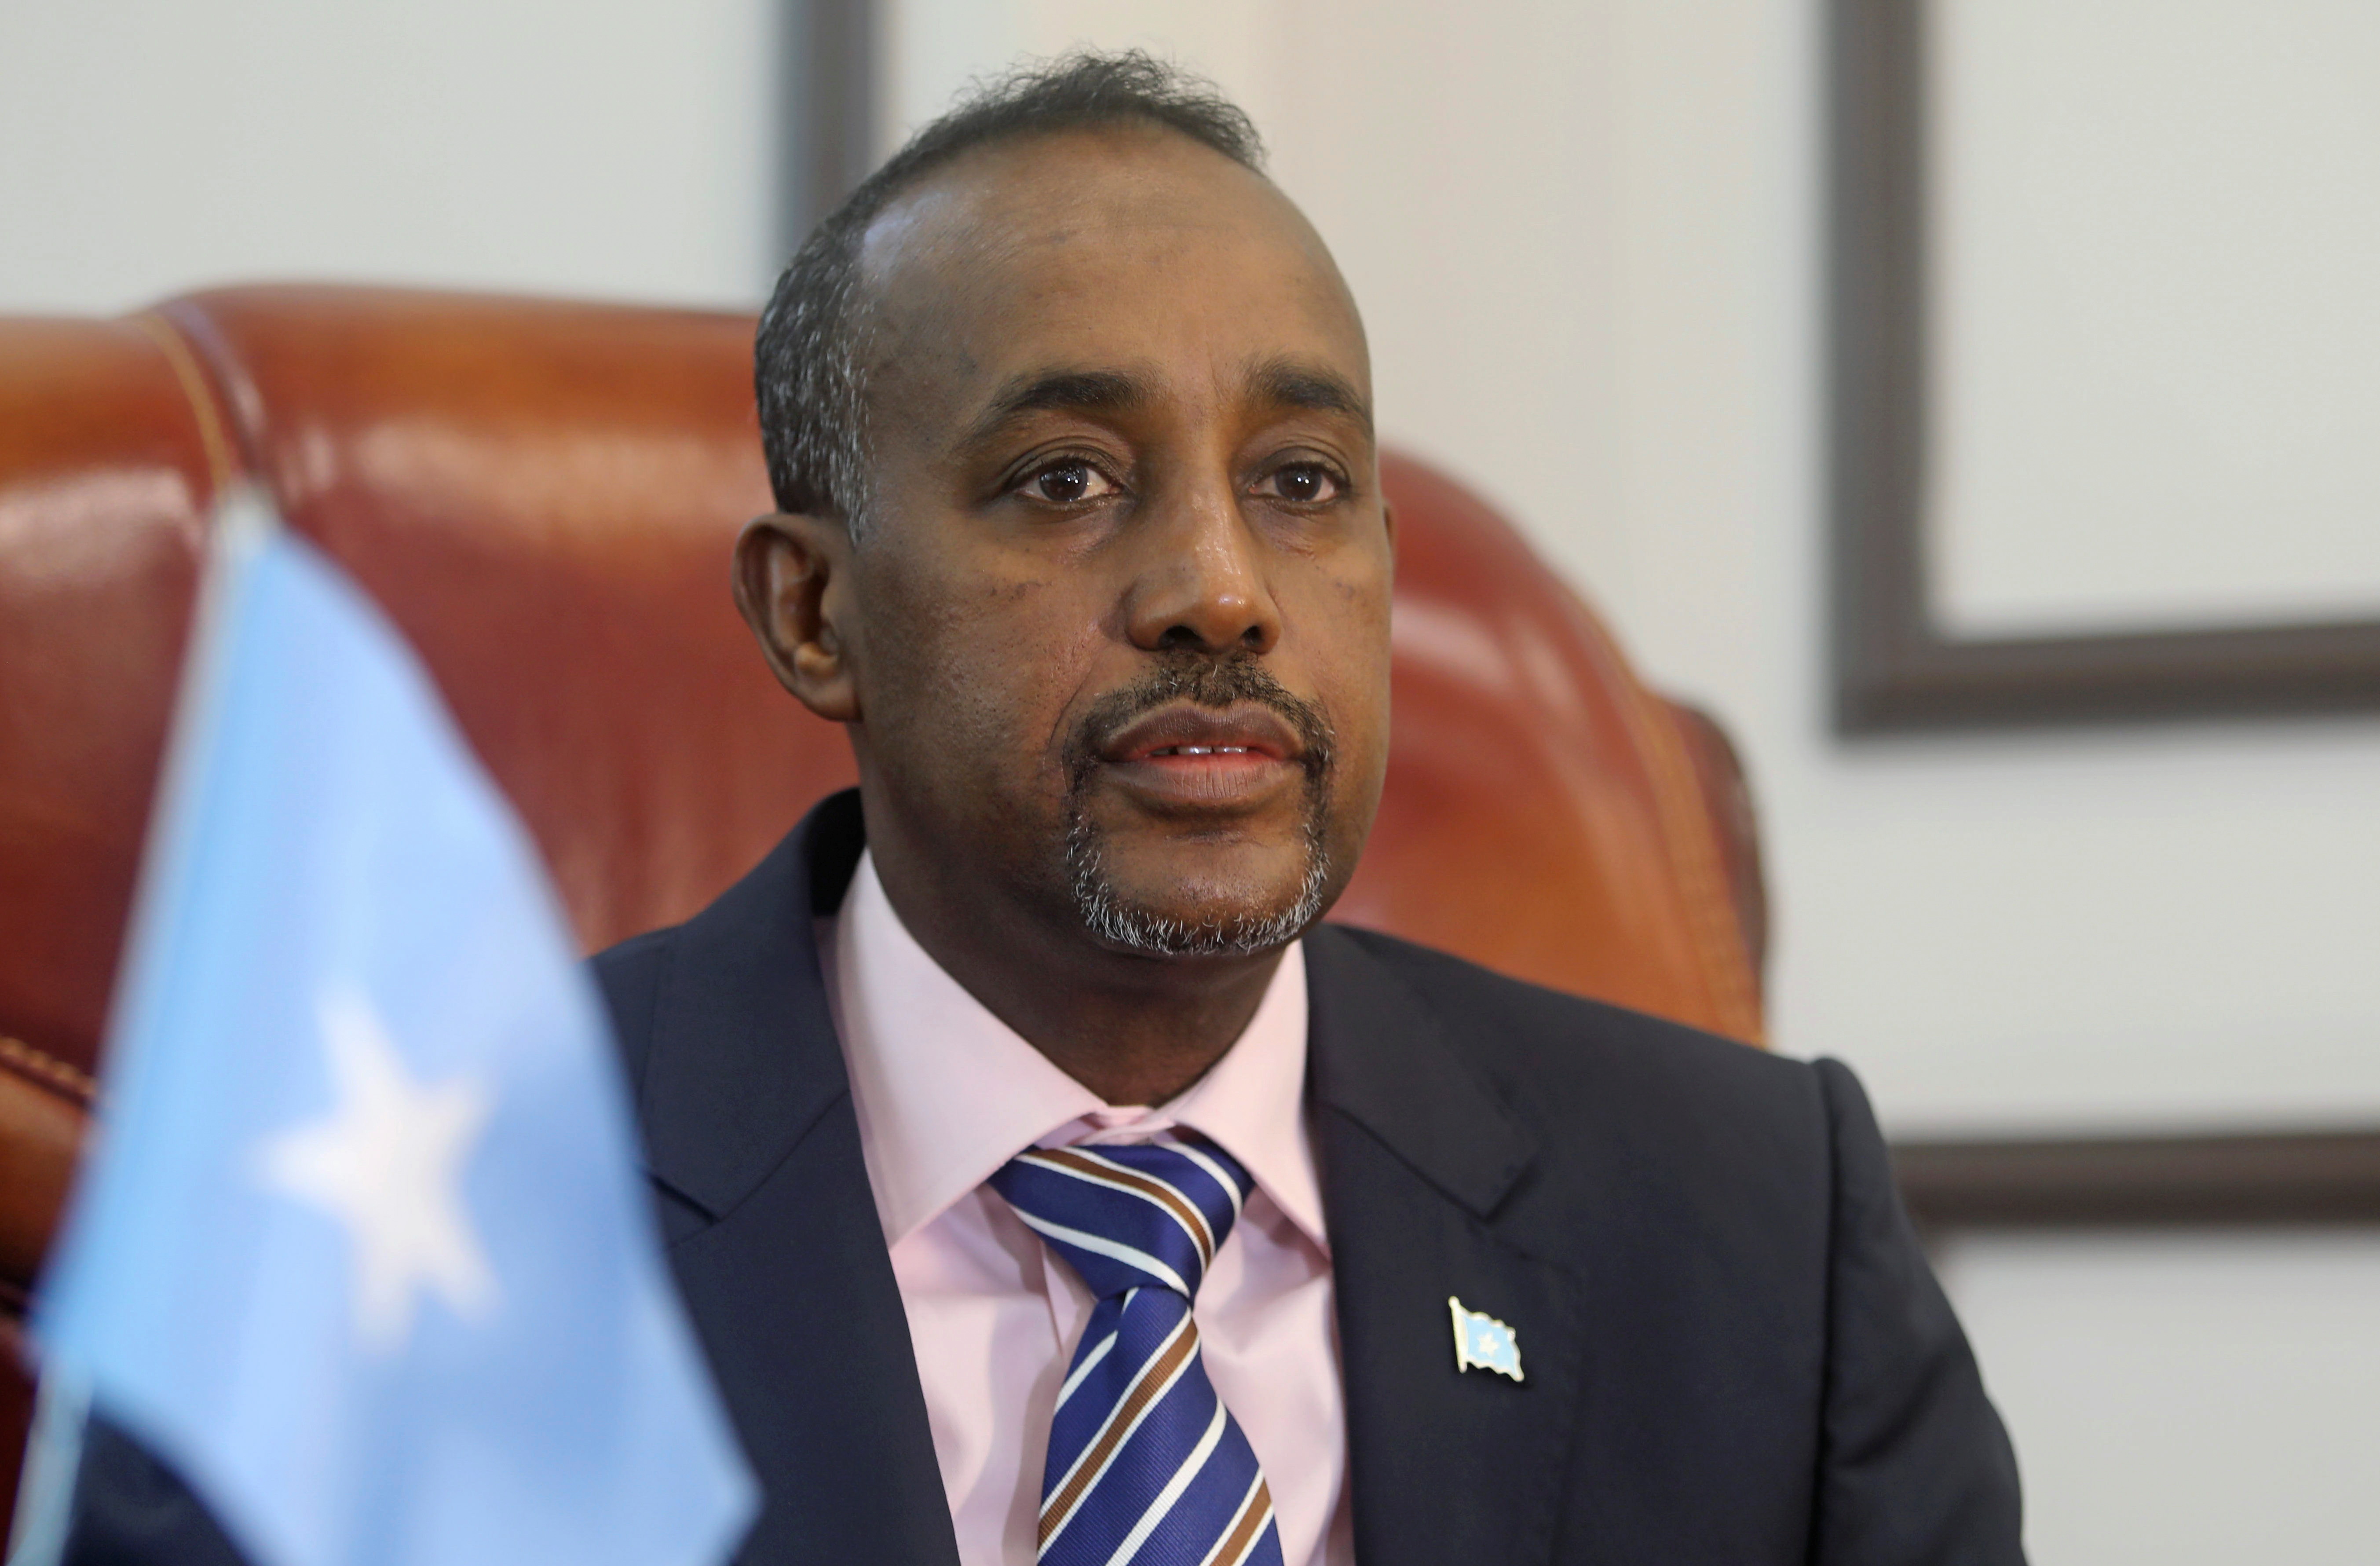 Somalia's Prime Minister Mohamed Hussein Roble looks on before addressing members of parliament in Mogadishu, Somalia February 10, 2021. REUTERS/Feisal Omar